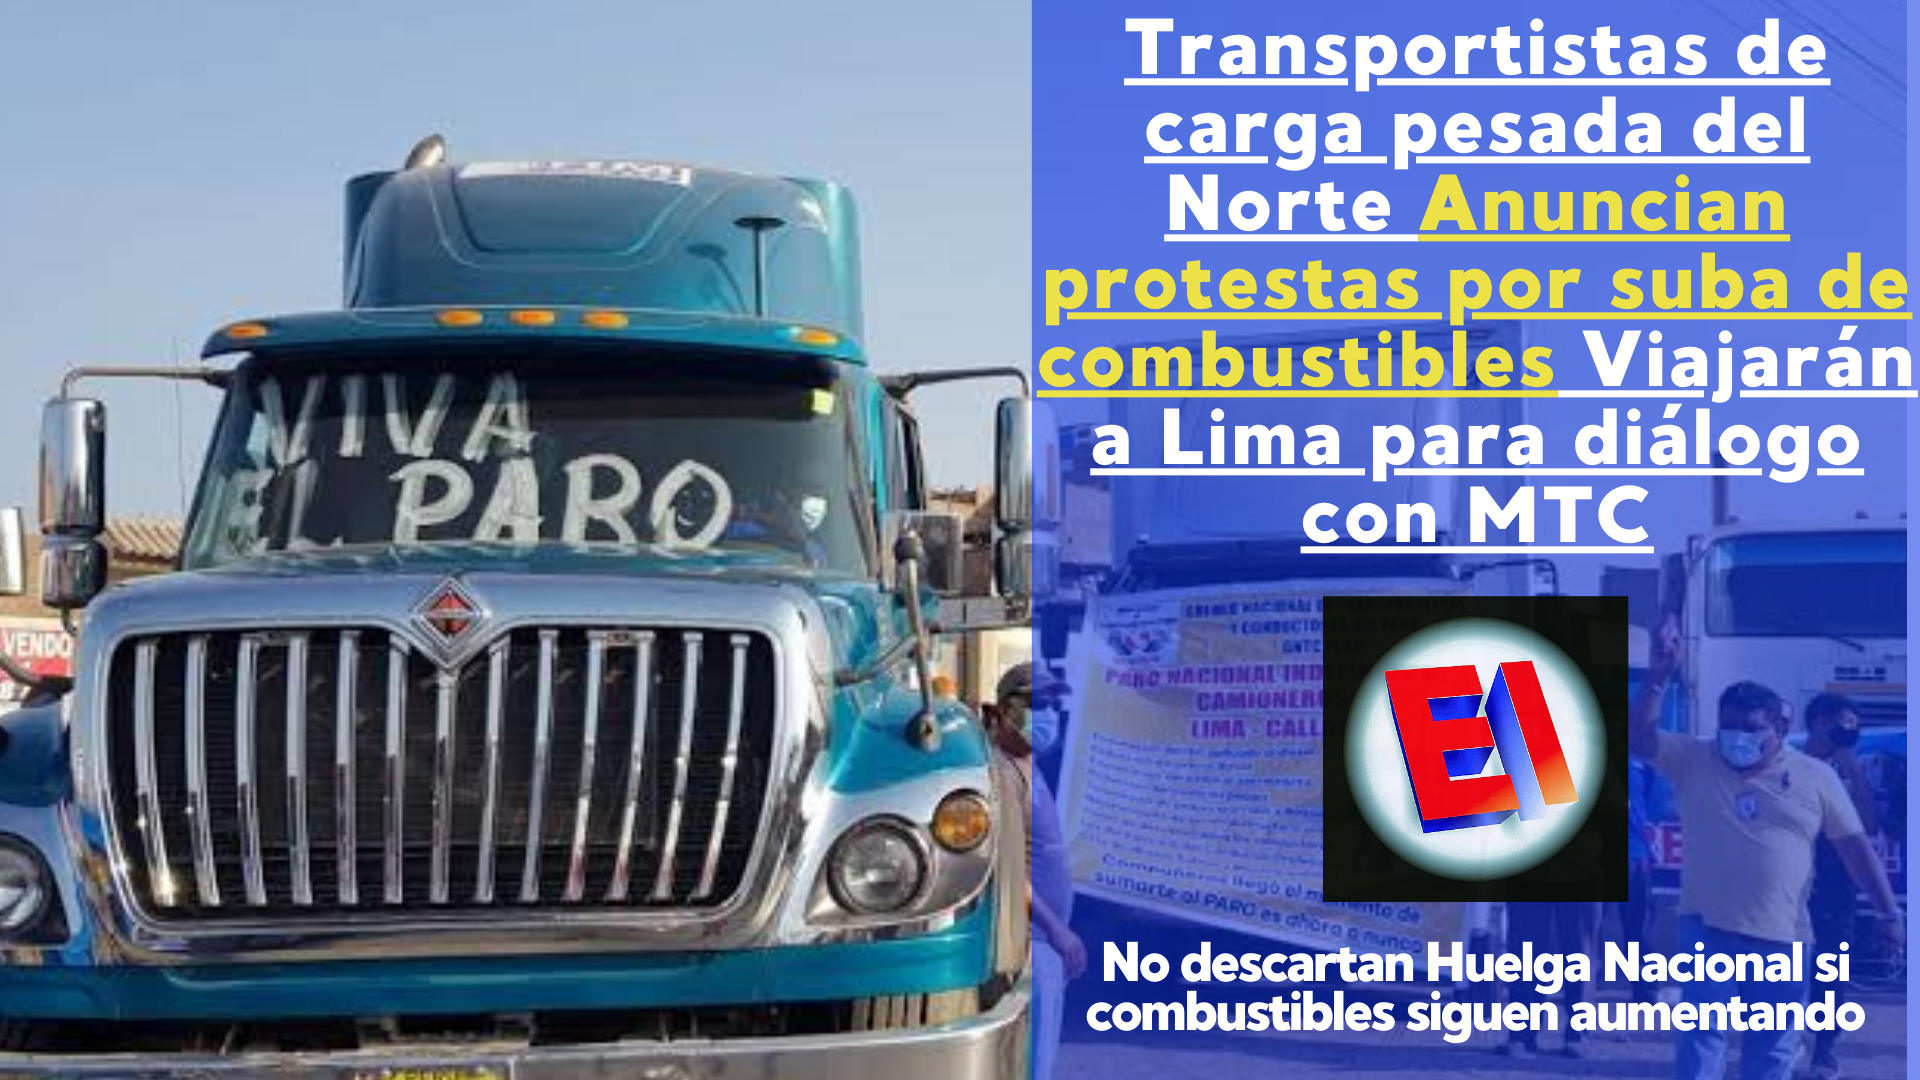 Transportistas de carga pesada del Norte del país anuncian protestas por suba de combustibles    